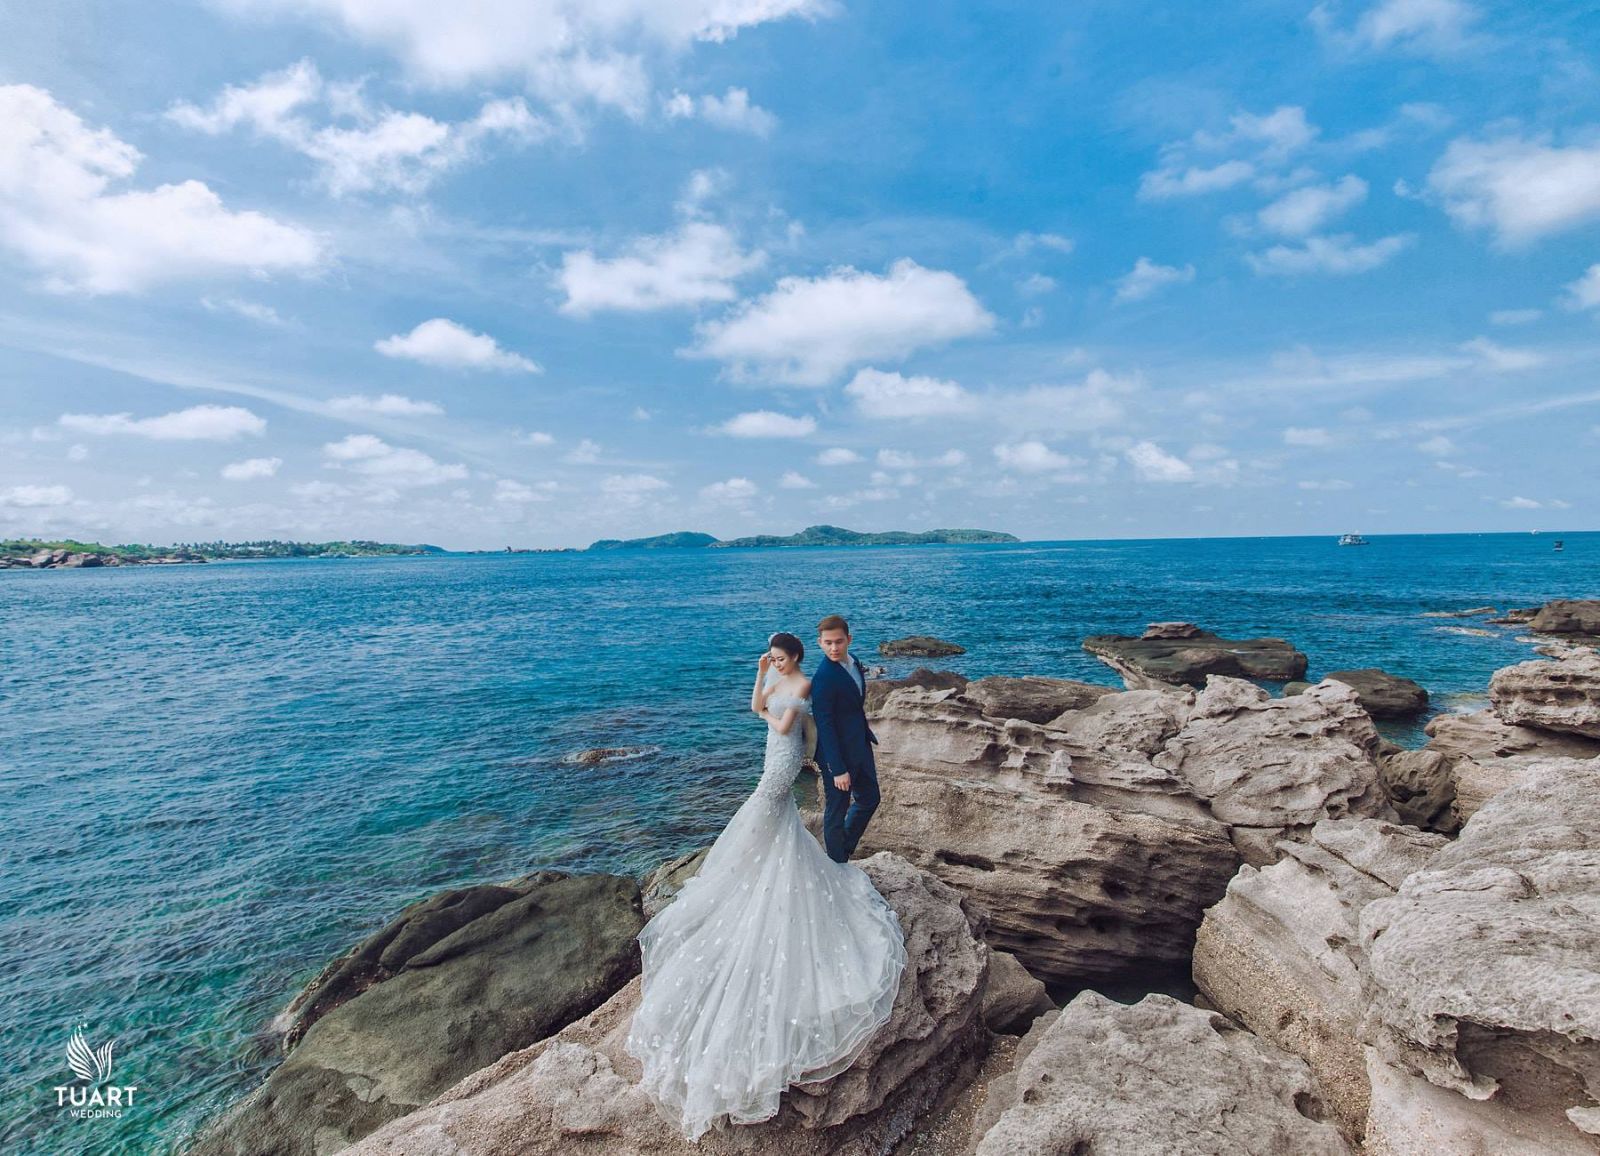 Tour chụp ảnh cưới tại đảo ngọc Phú Quốc chỉ còn 2 slot 8